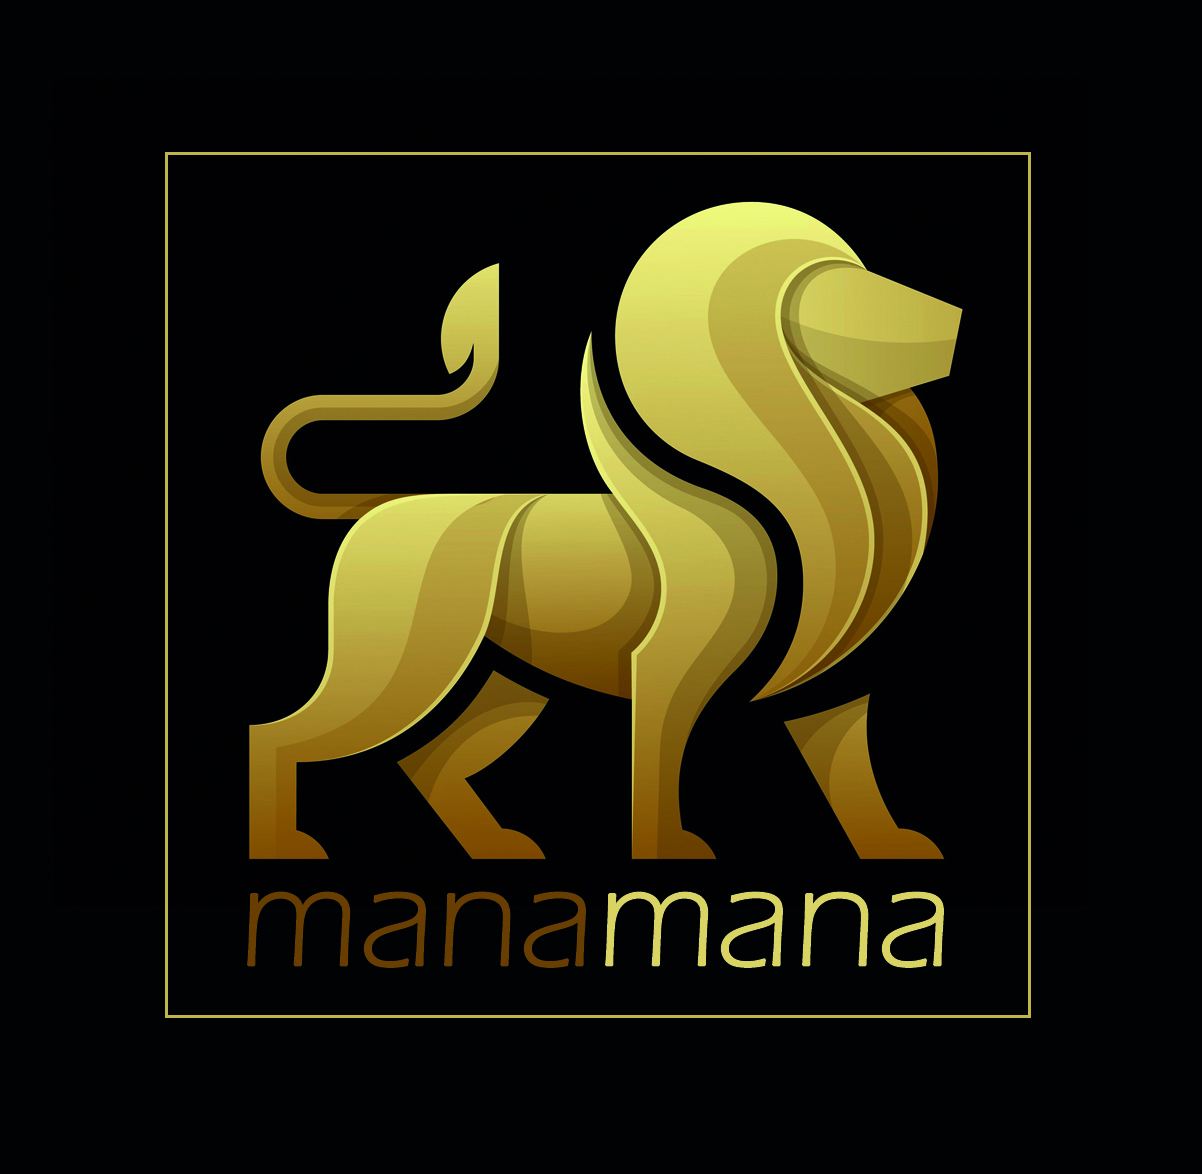 Manamana events